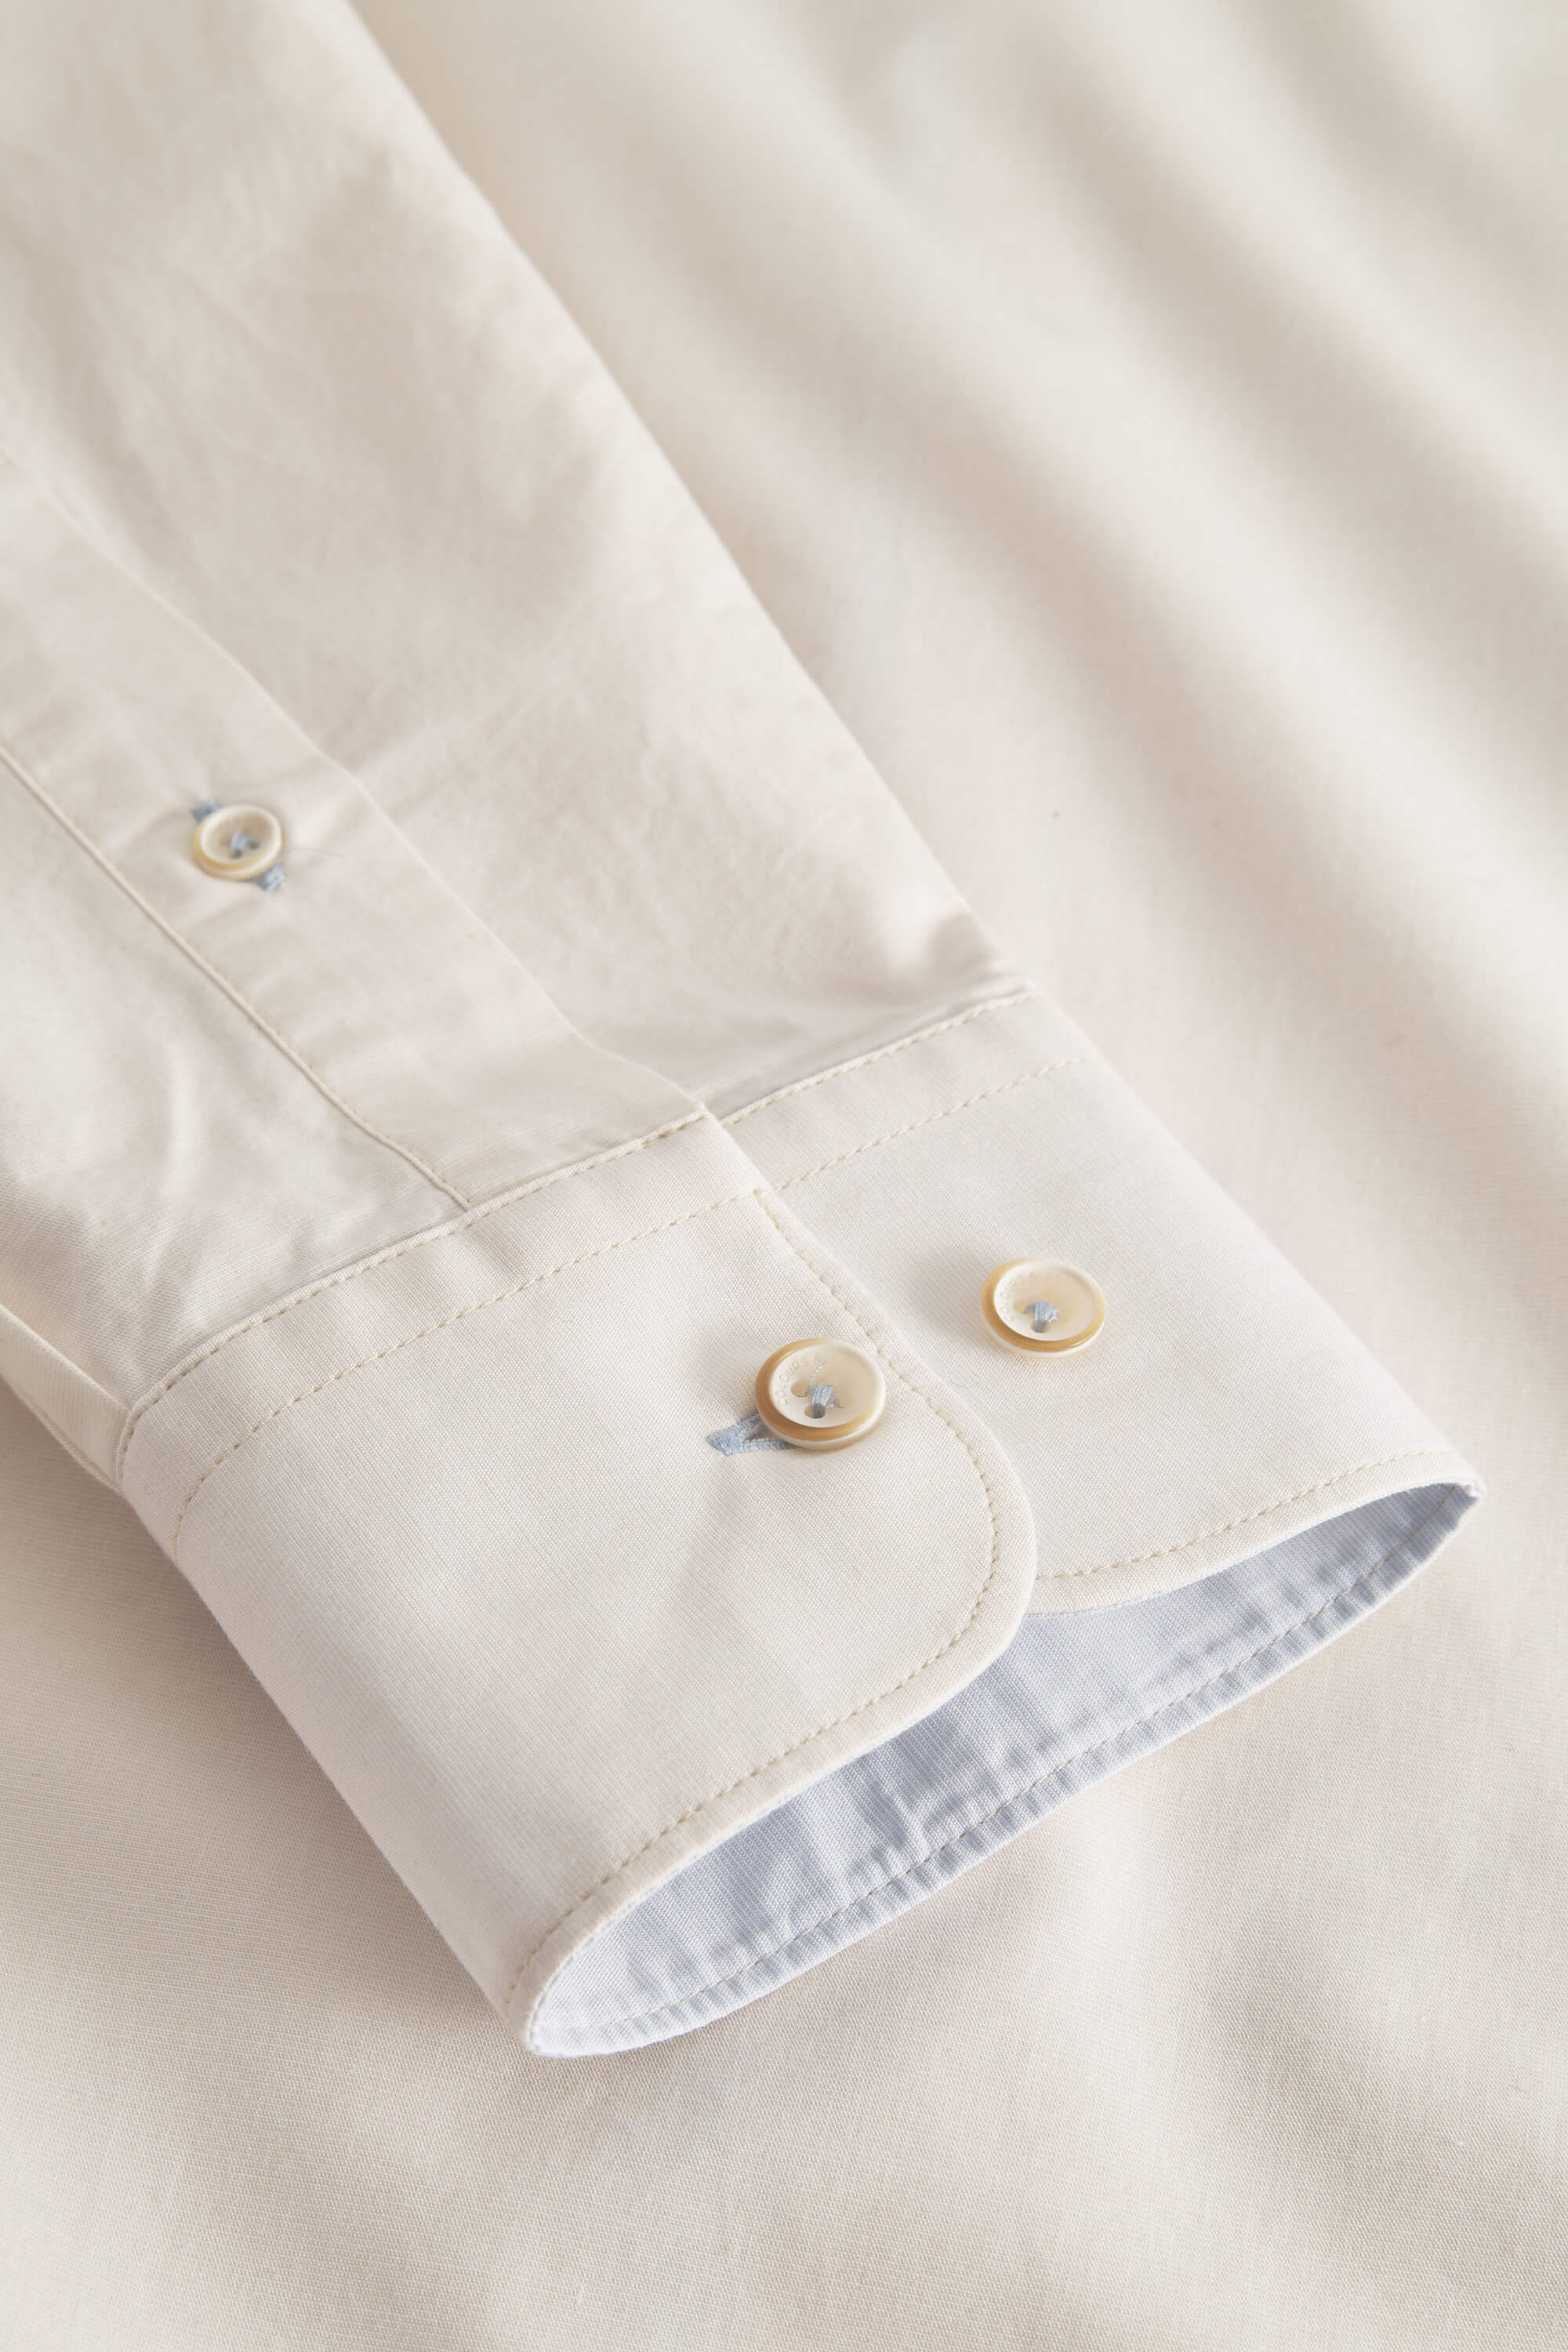 Basic Shirt Poplin - Offwhite